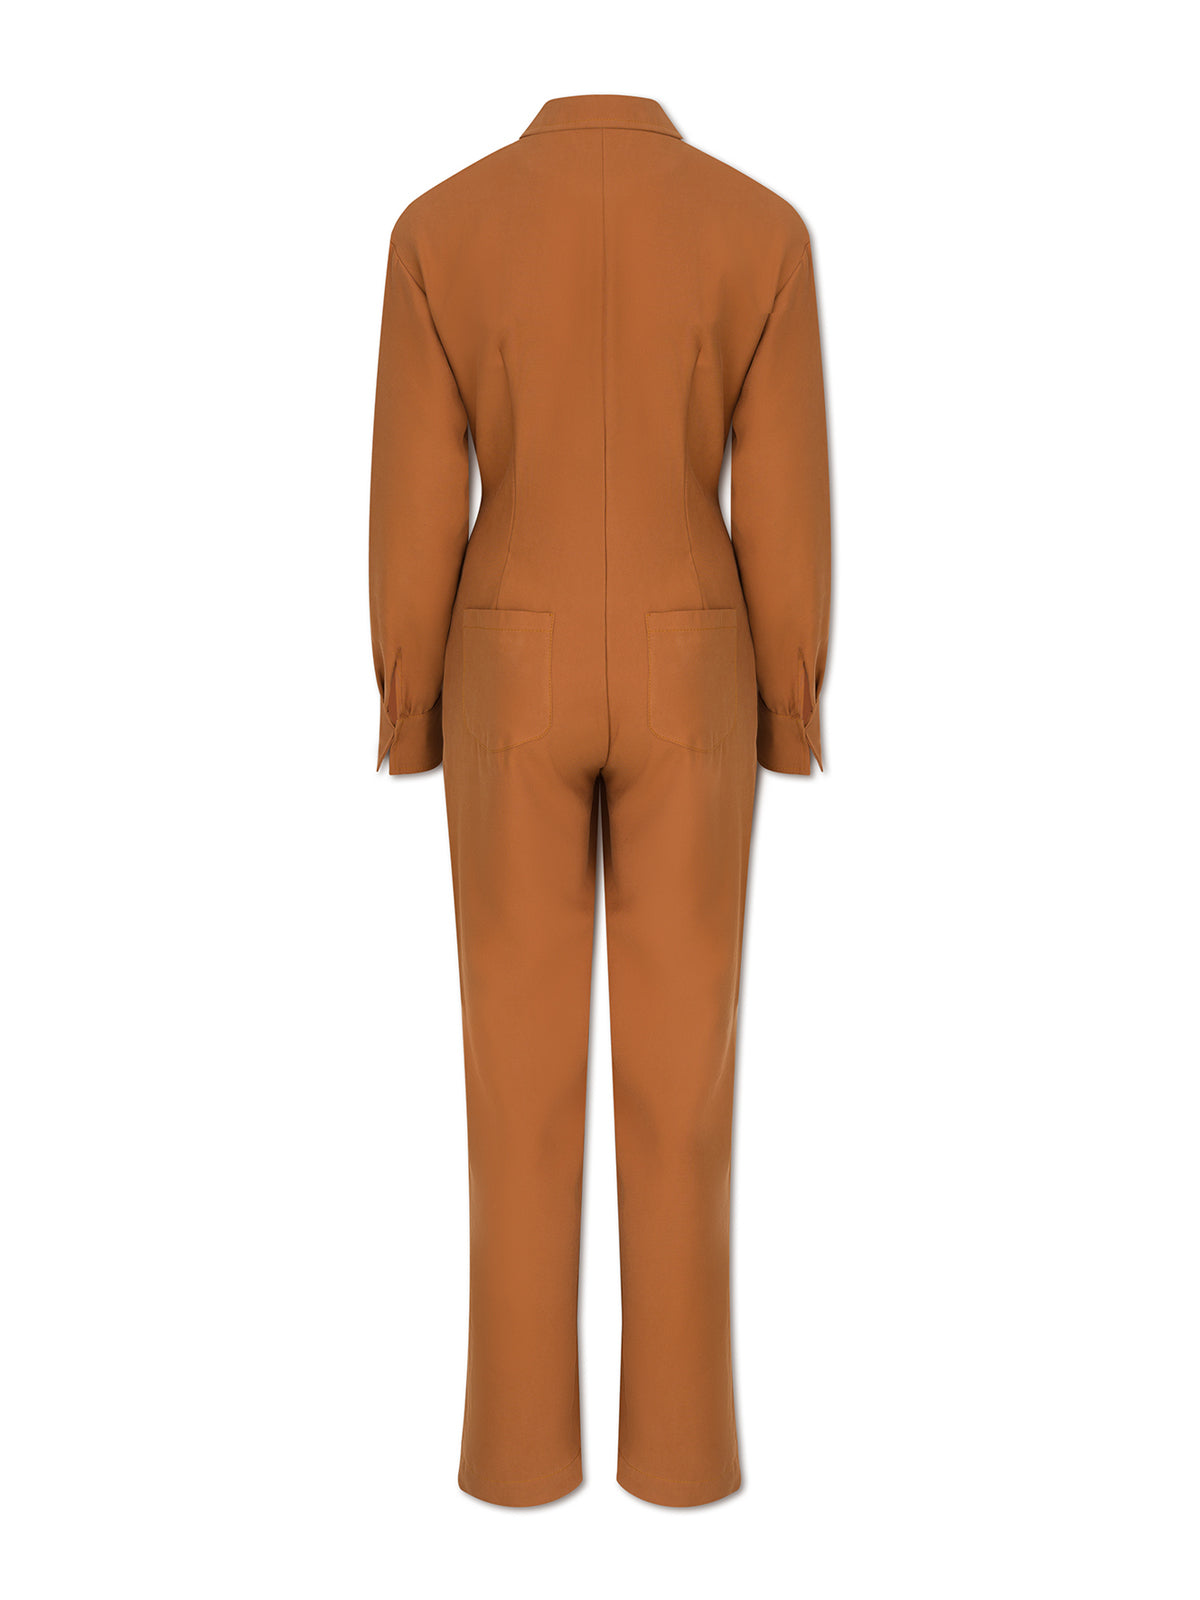 EEL jumpsuit - caramel